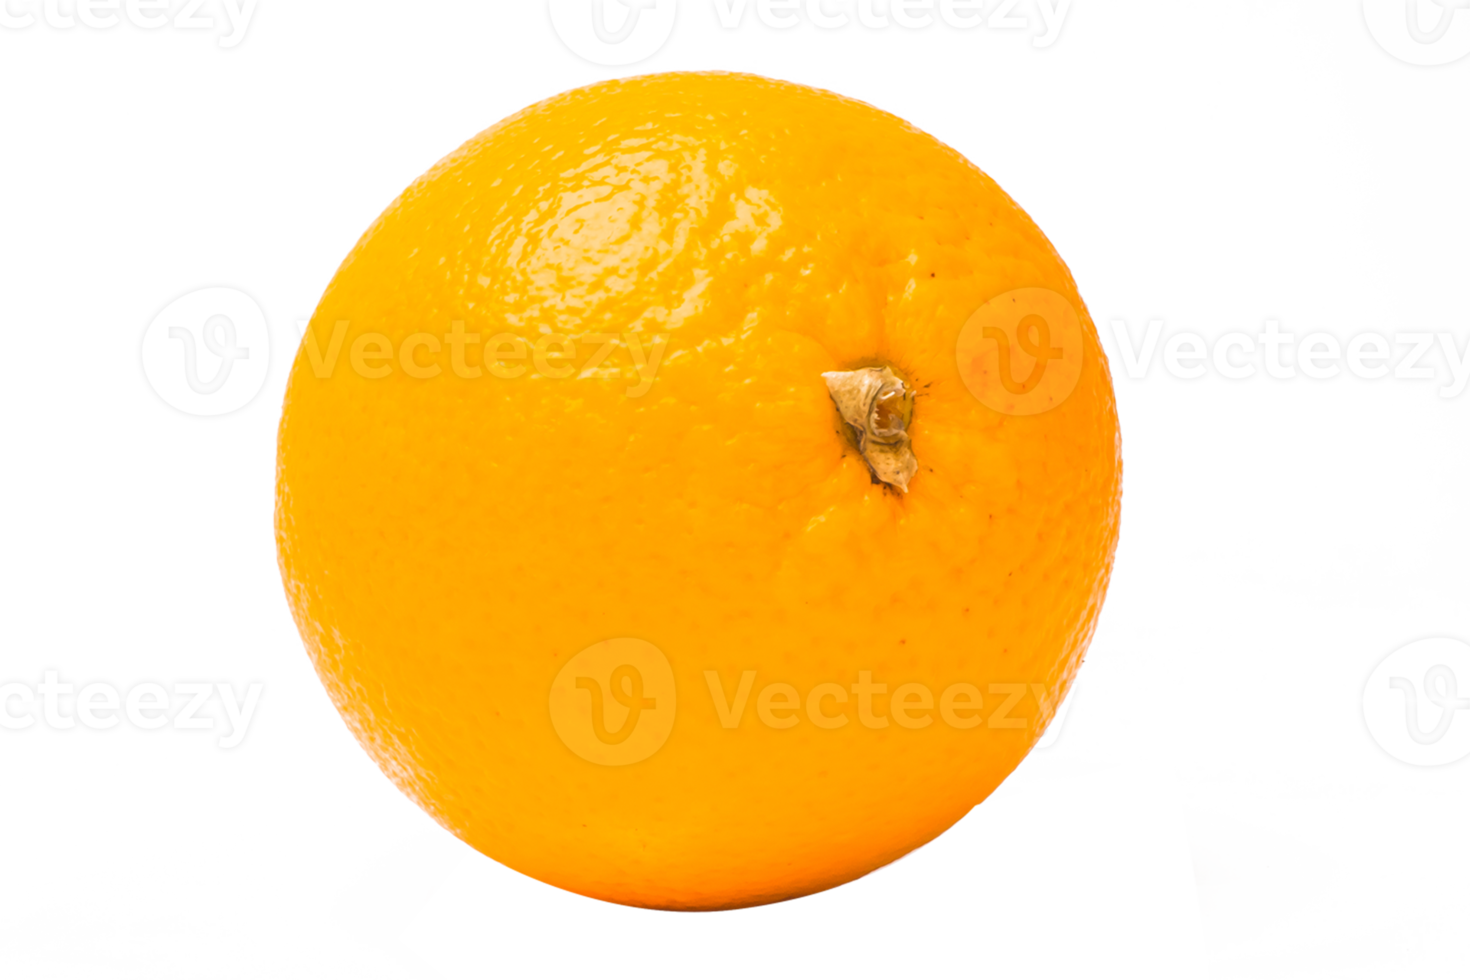 orange frukt på vit bakgrund png